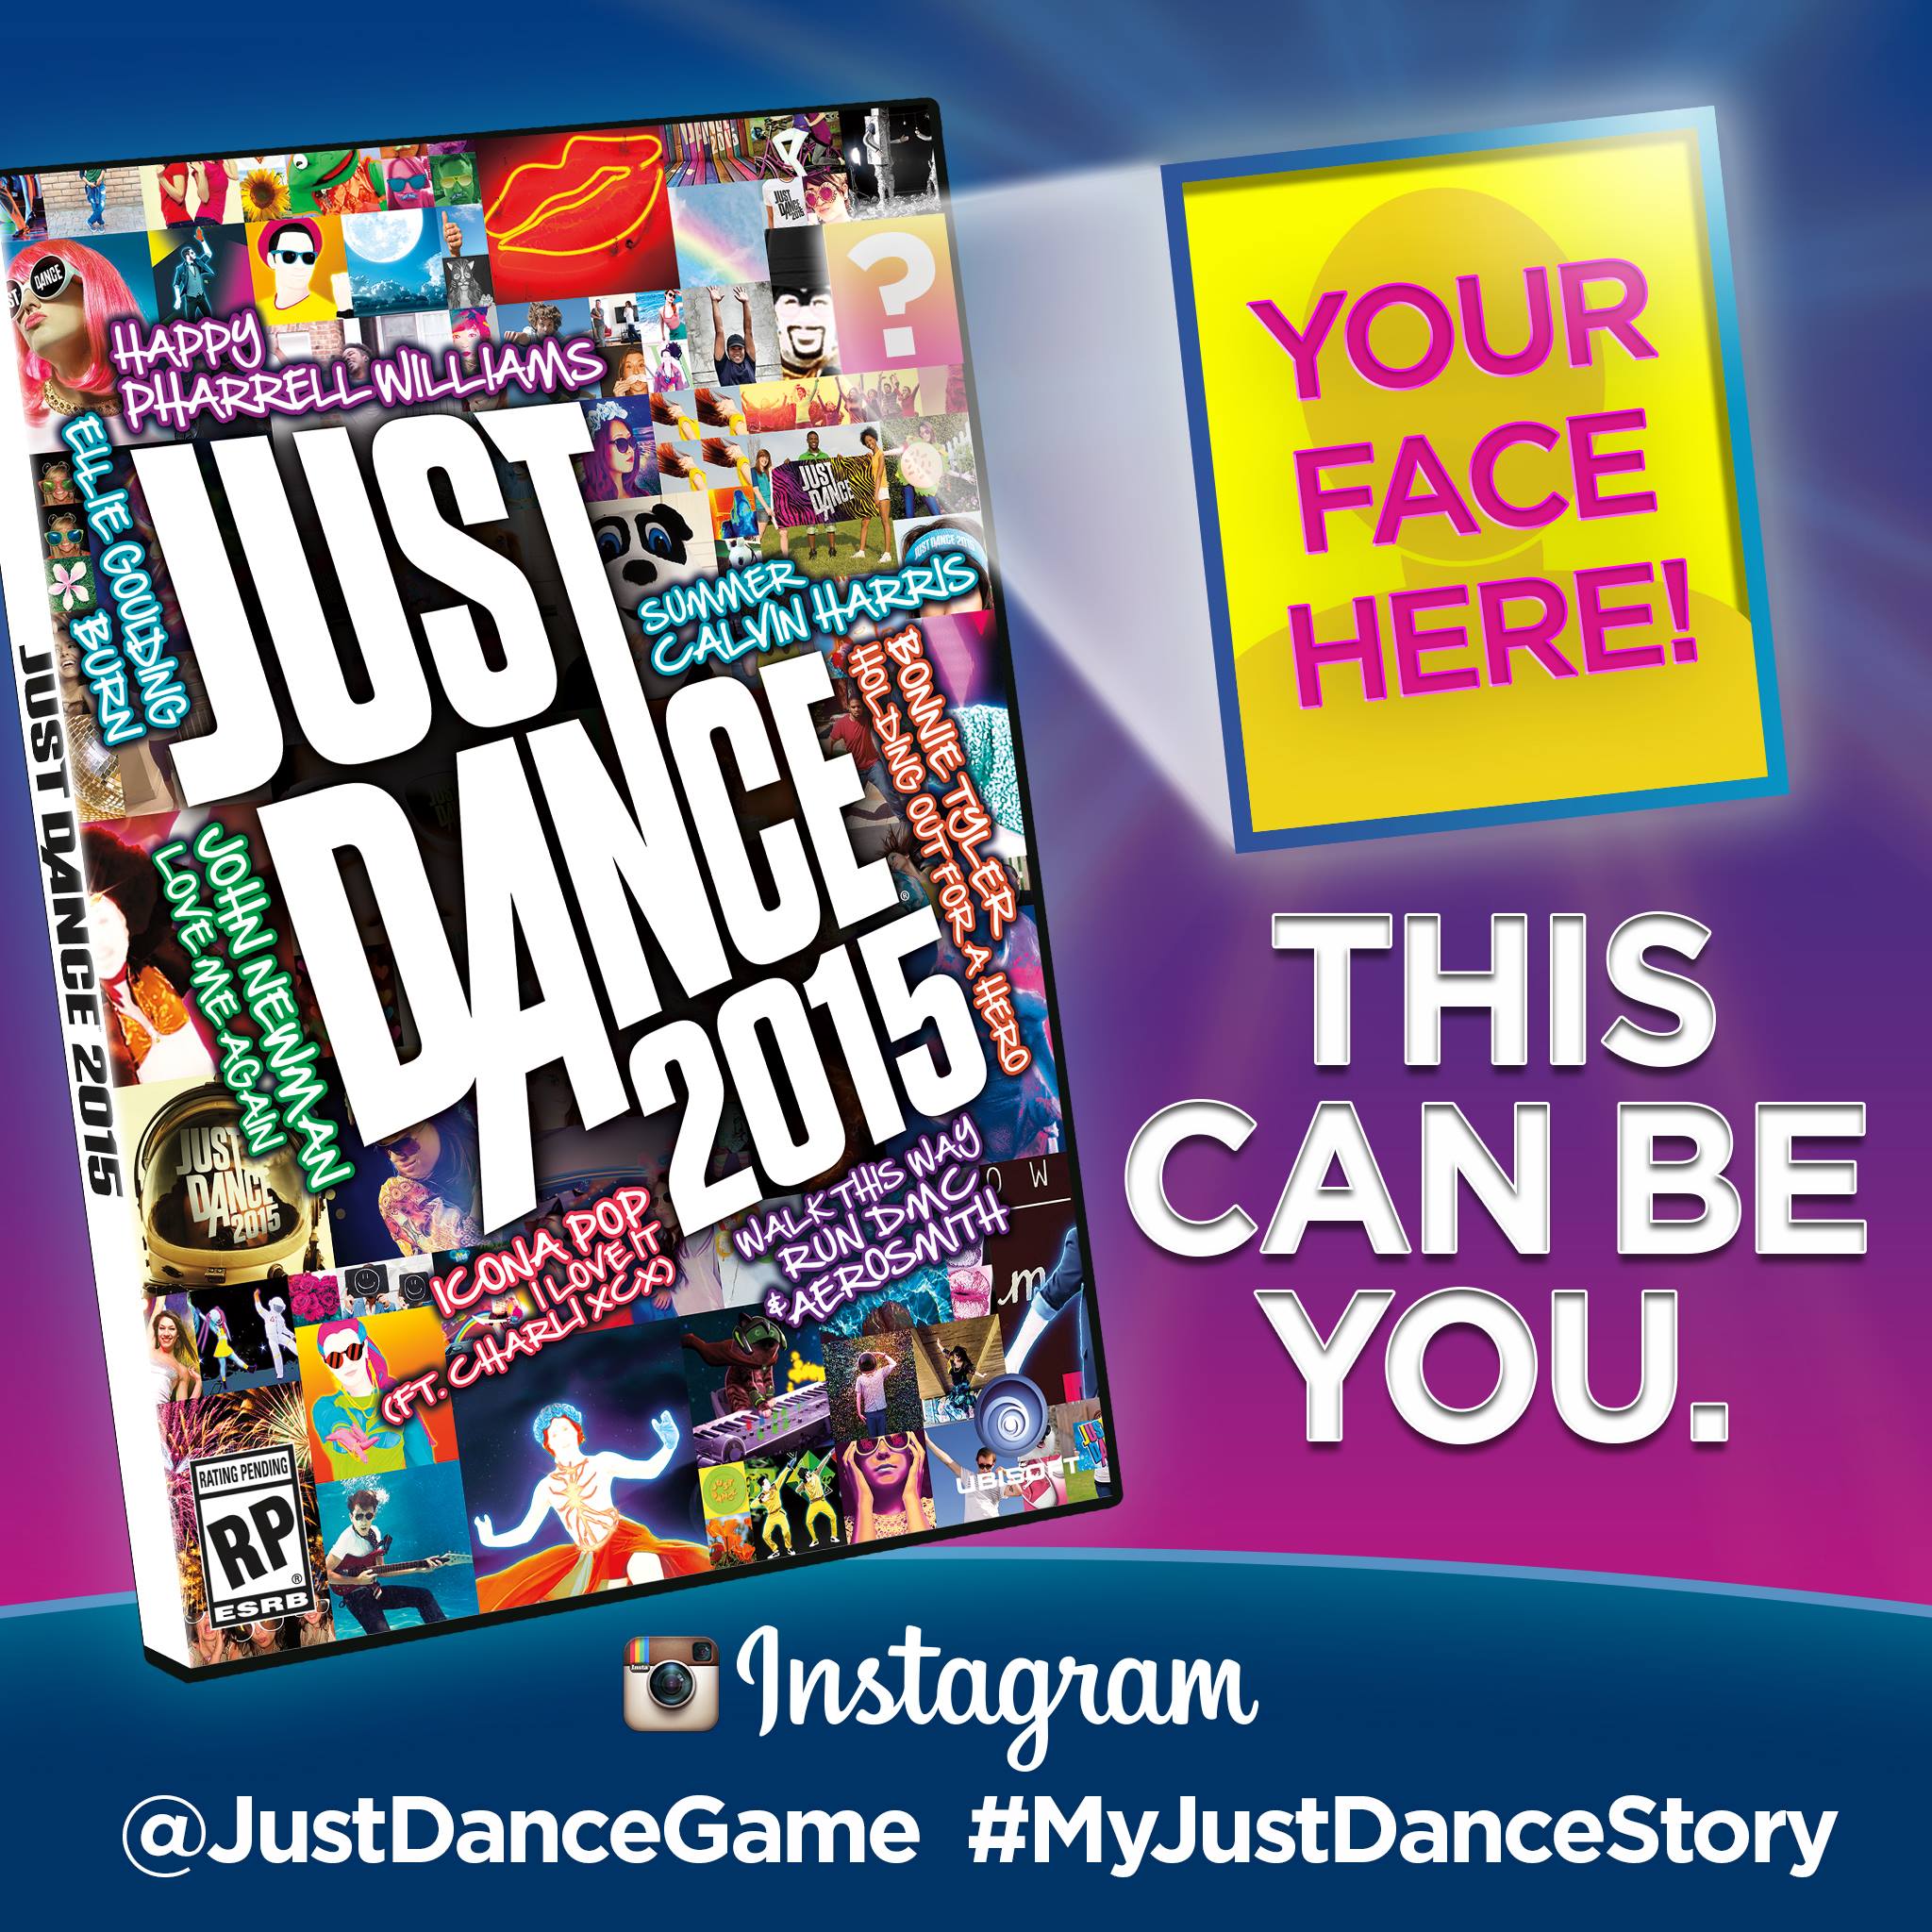 Just Dance 2015 Box Artwork